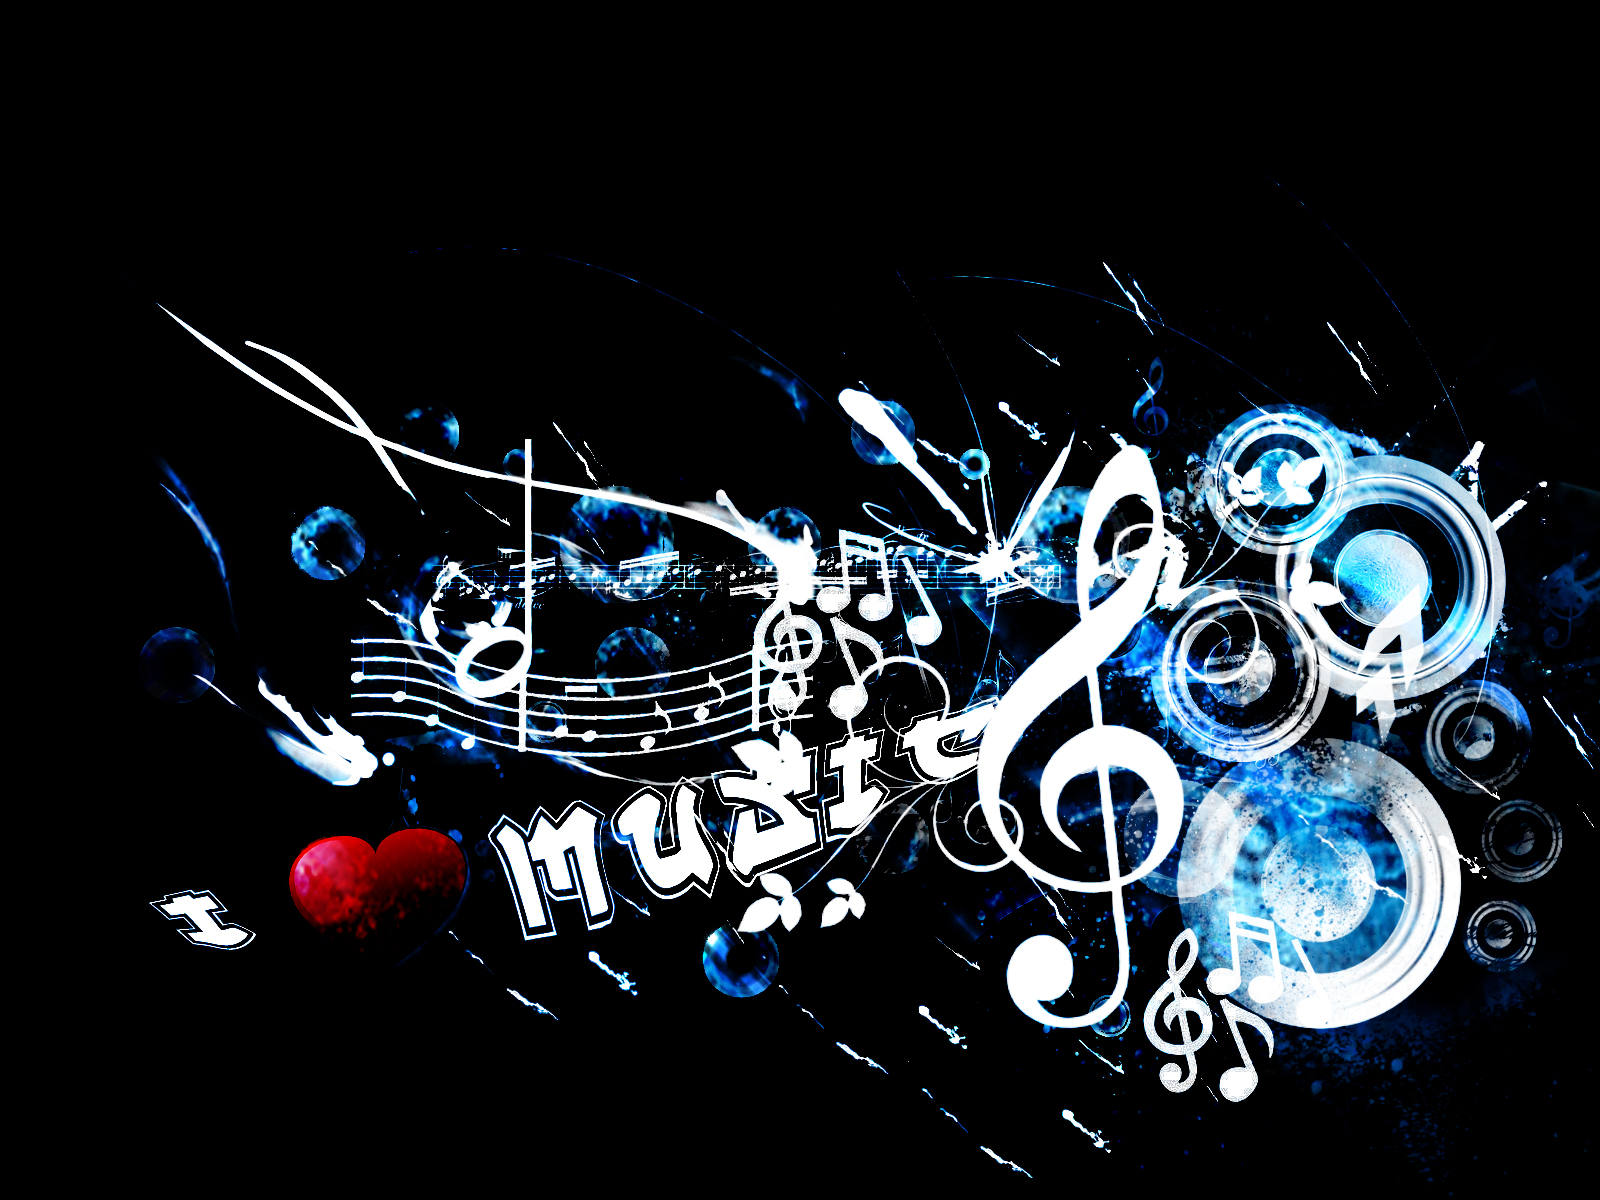 50+] Music Wallpaper for PC - WallpaperSafari